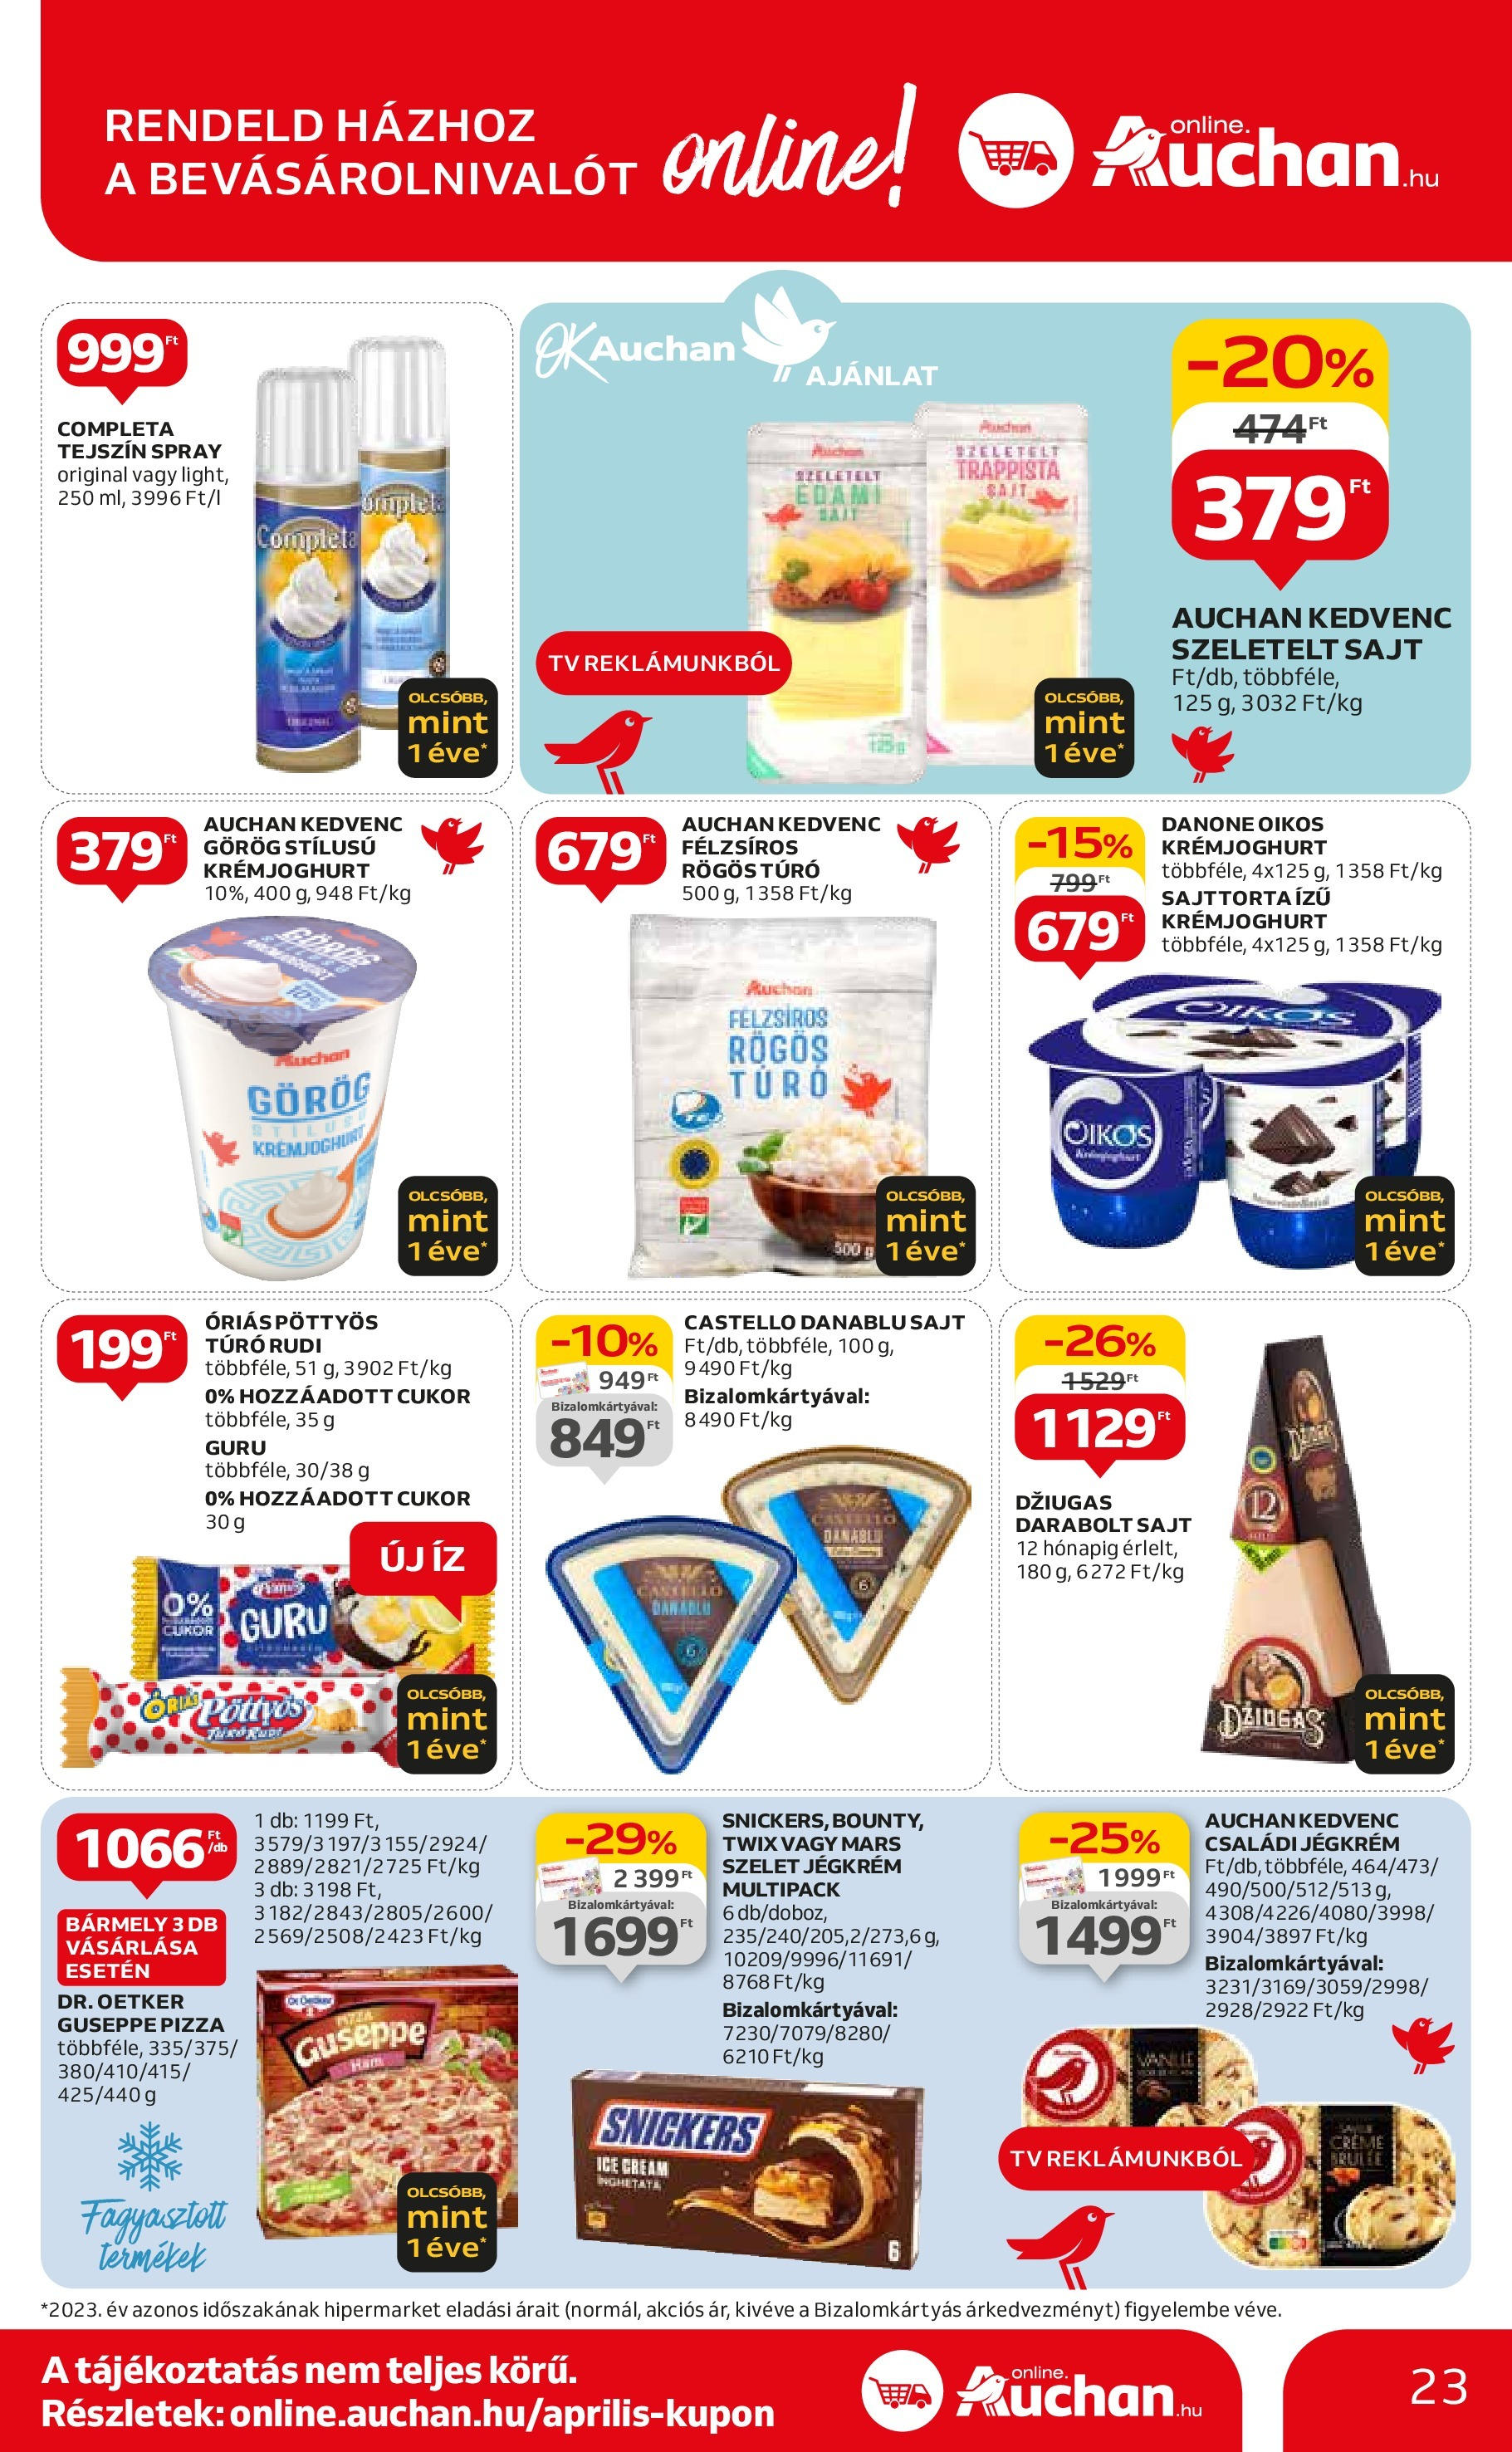 Auchan  Akciós újság - 2024.04.25. -tól/töl > akció, szórólap 🛍️ | Oldal: 23 | Termékek: Túró rudi, TV, Pizza, Jégkrém